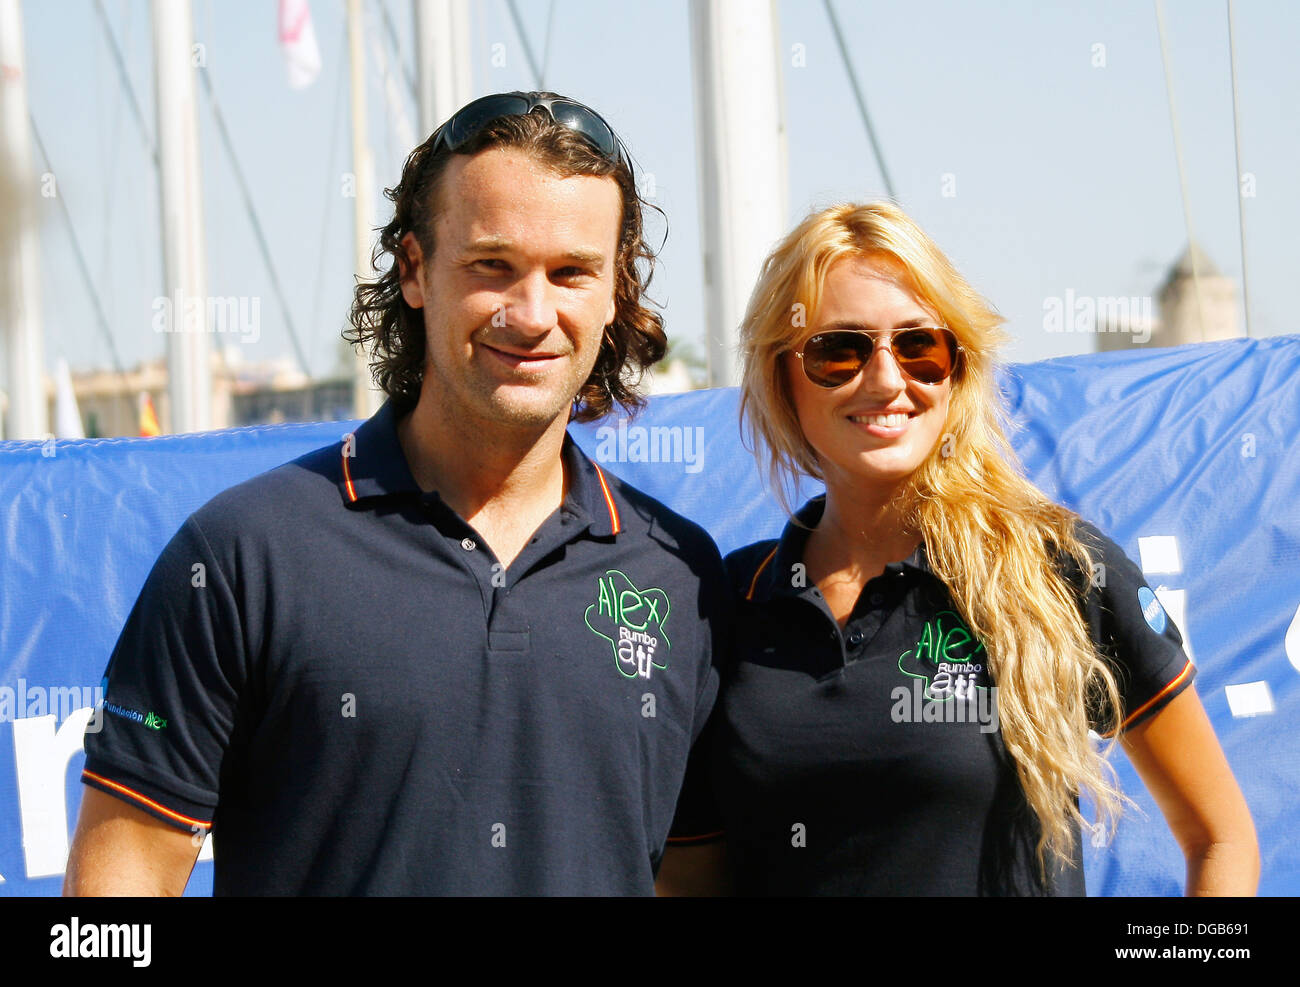 Carlos Moya and his wife actress Carolina Cerezuela seen in Palma de Mallorca, Spain Stock Photo